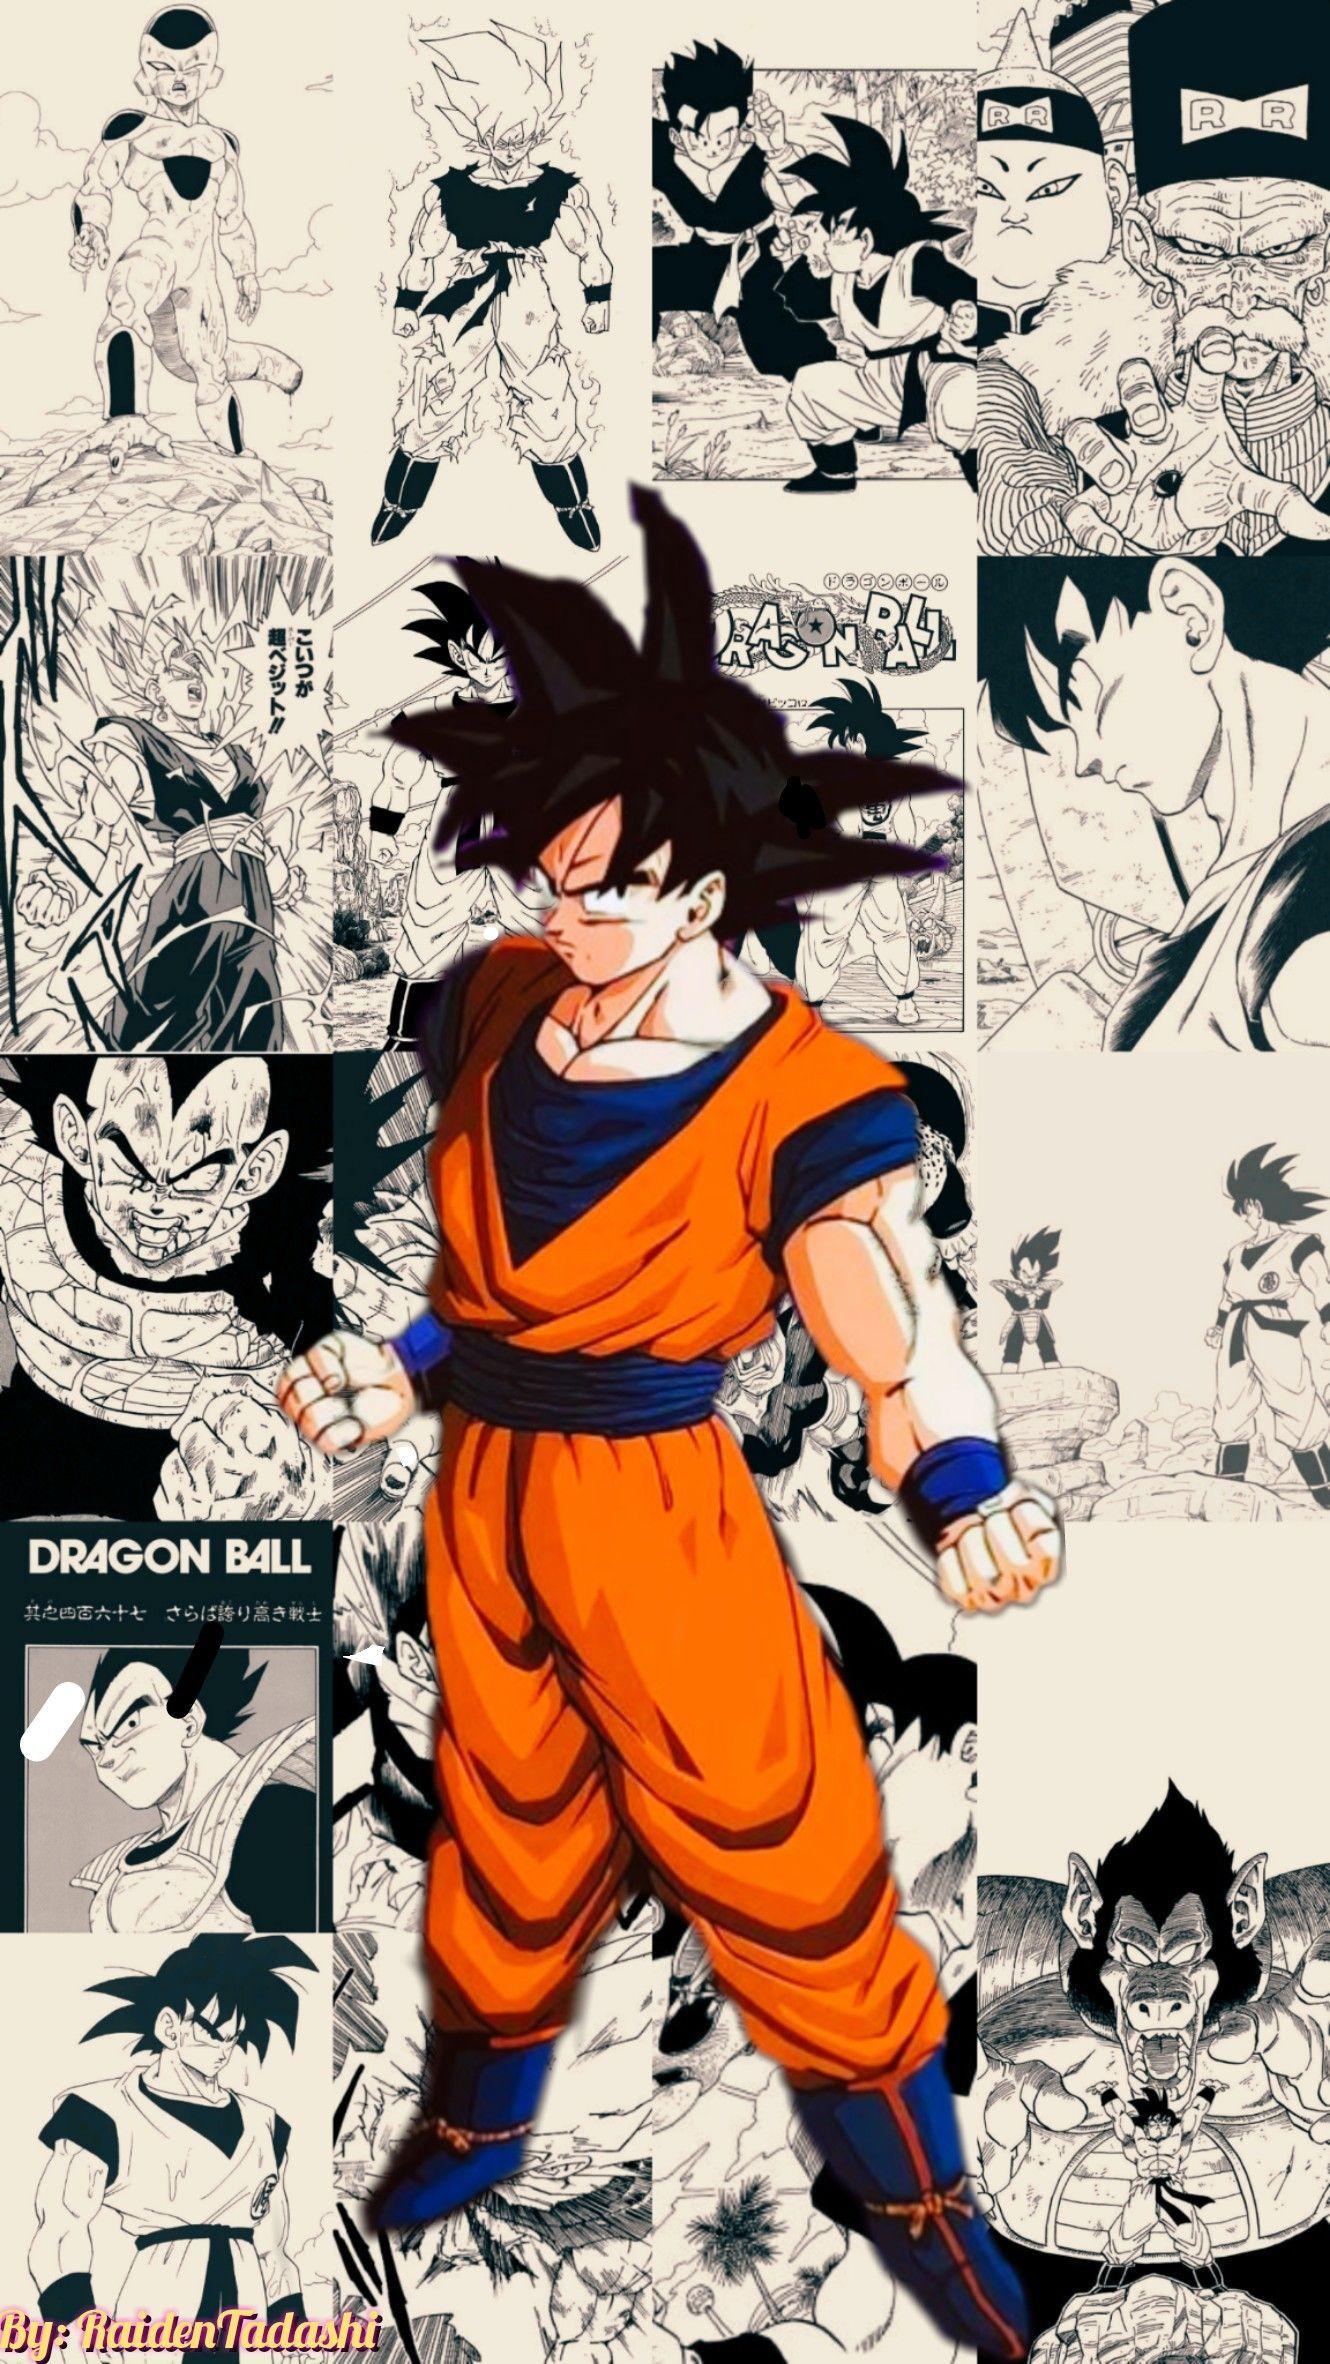 Awesome Dragon Ball Manga Wallpapers - WallpaperAccess  Anime dragon ball  goku, Anime dragon ball super, Dragon ball painting